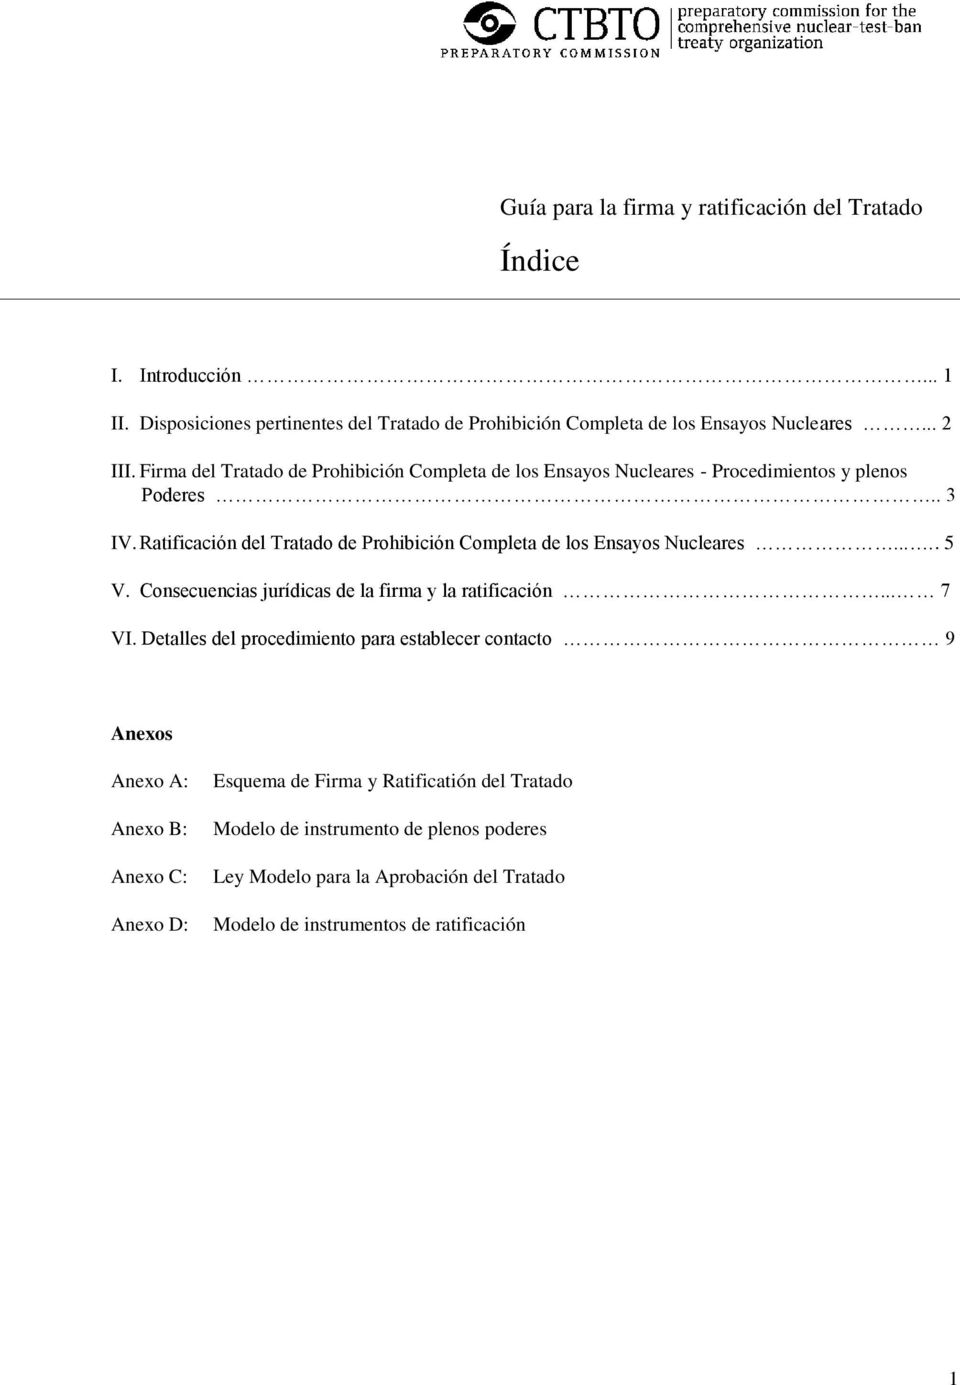 Guía para la firma y ratificación del Tratado - PDF Free Download